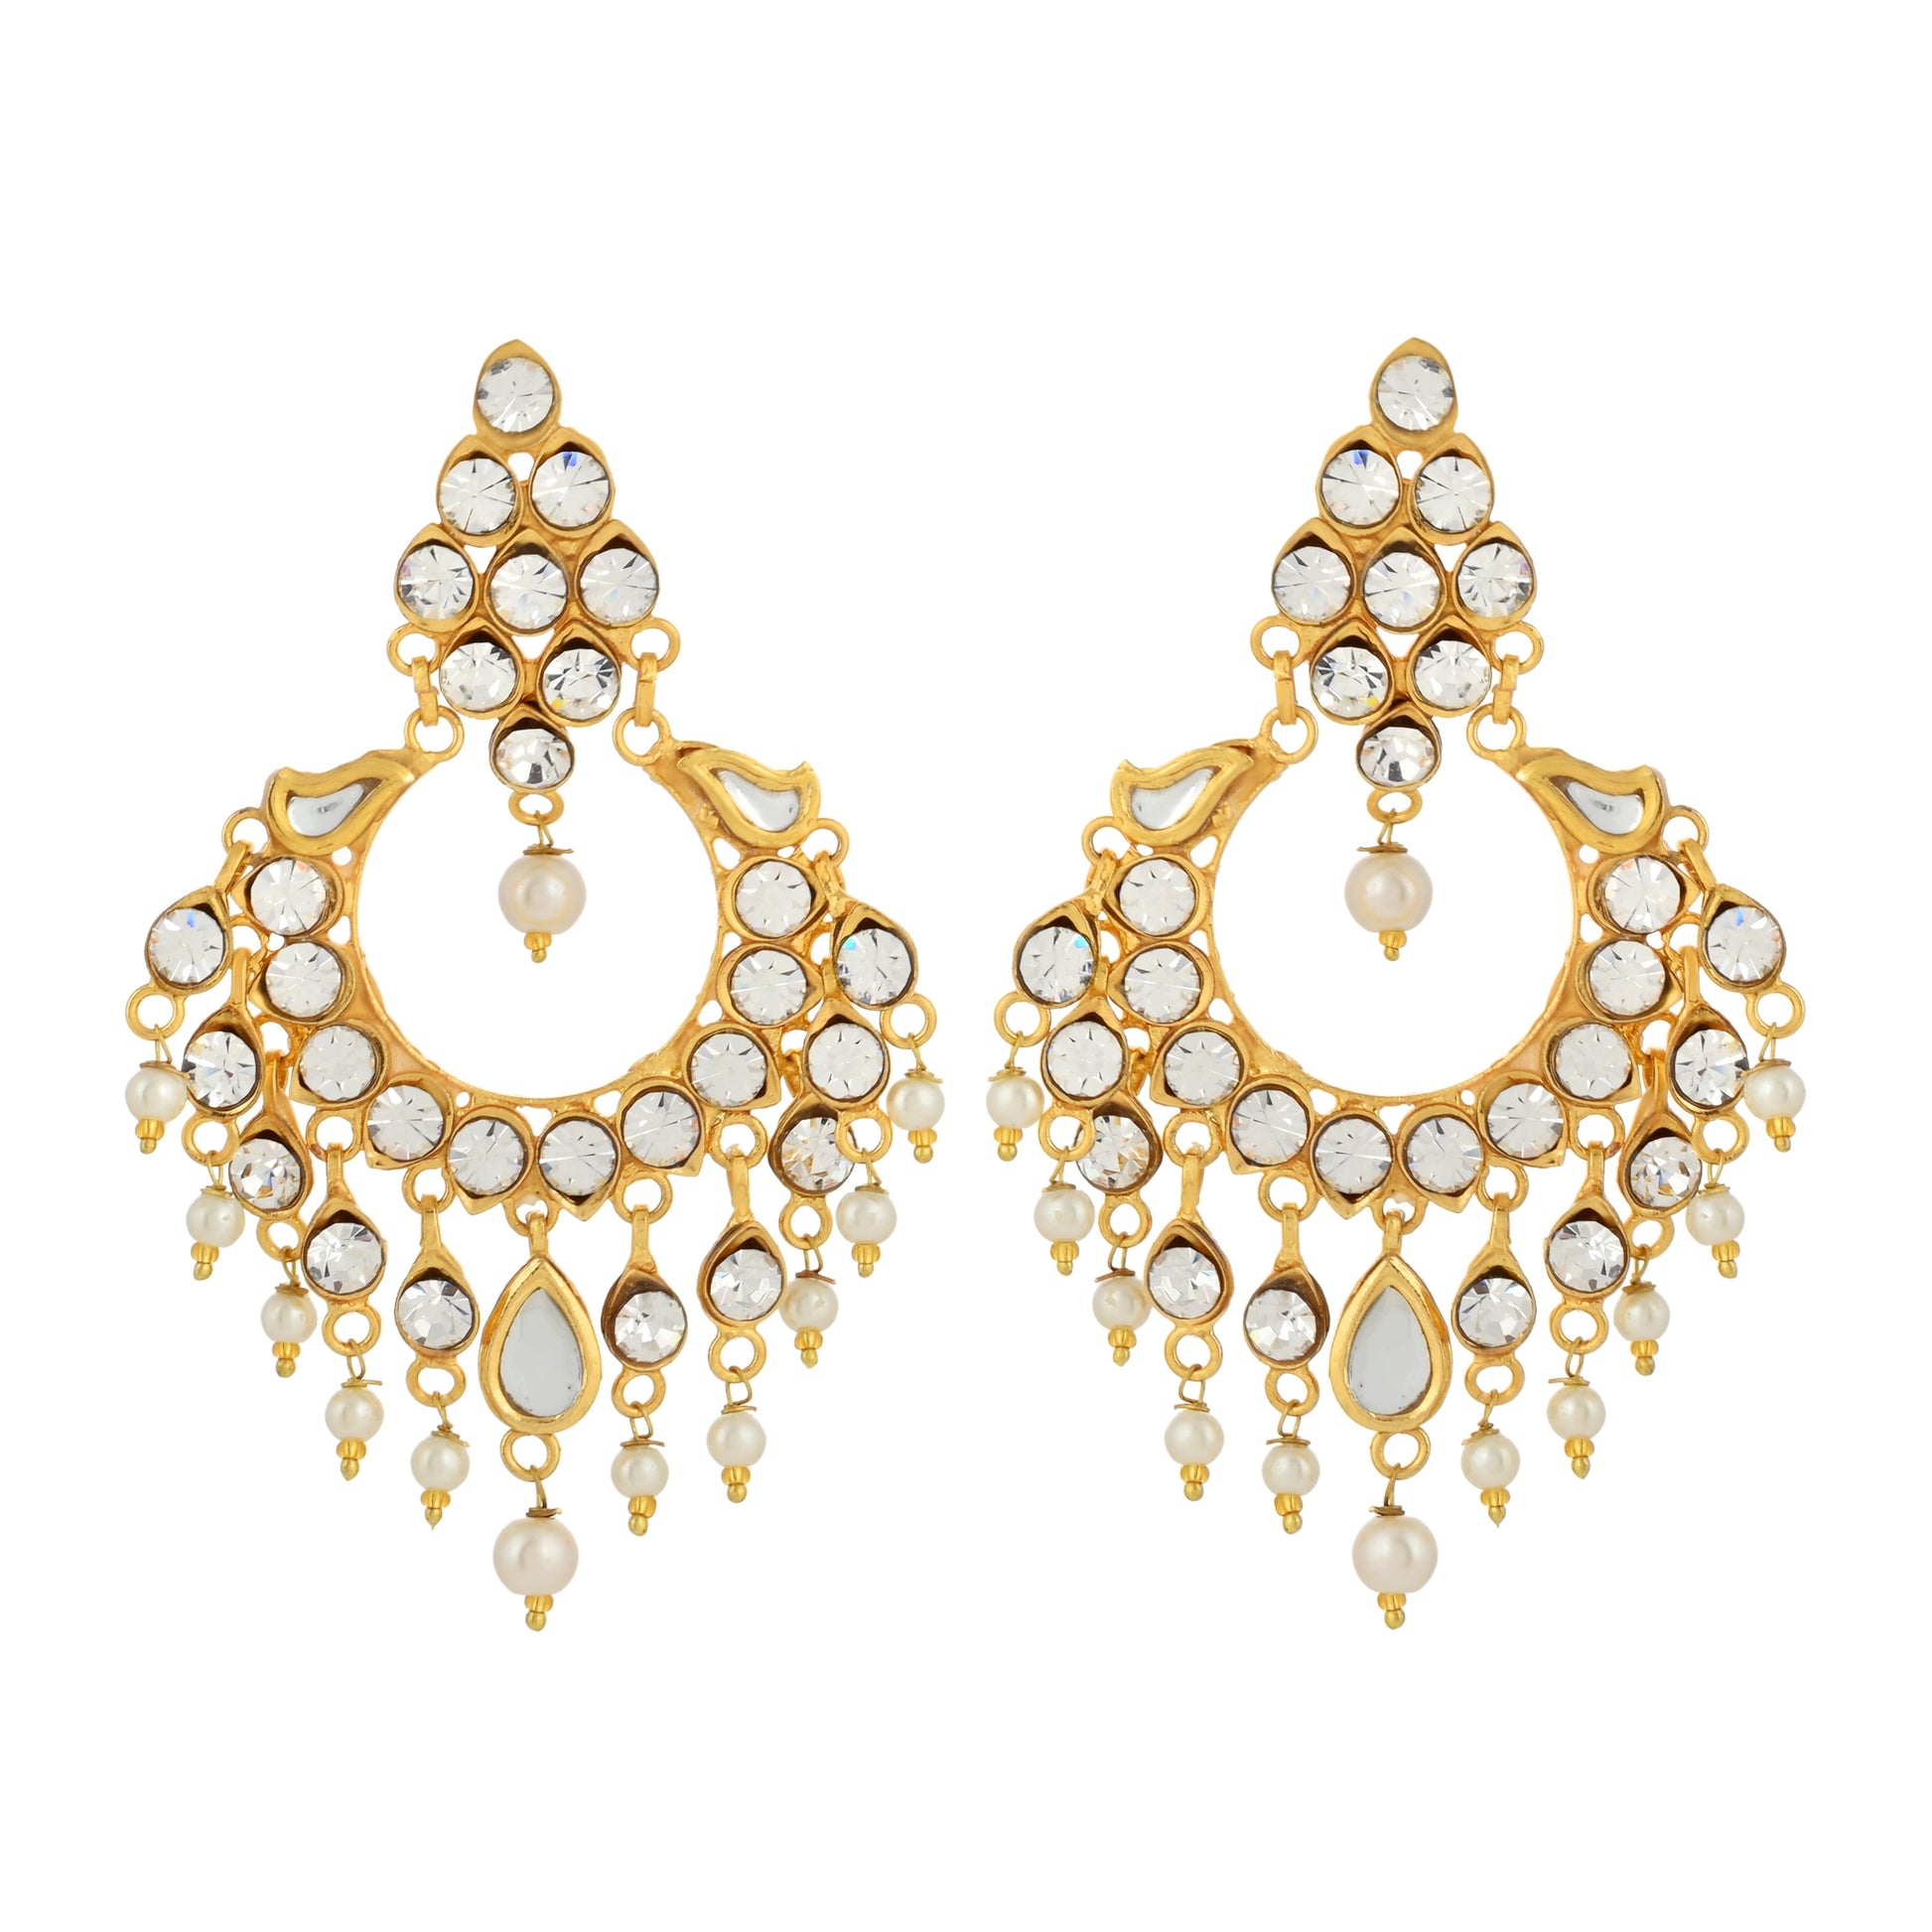 22K Gold Plated Earrings - Kundan Earrings - Antique Design Earrings - Danish Jewellers® 